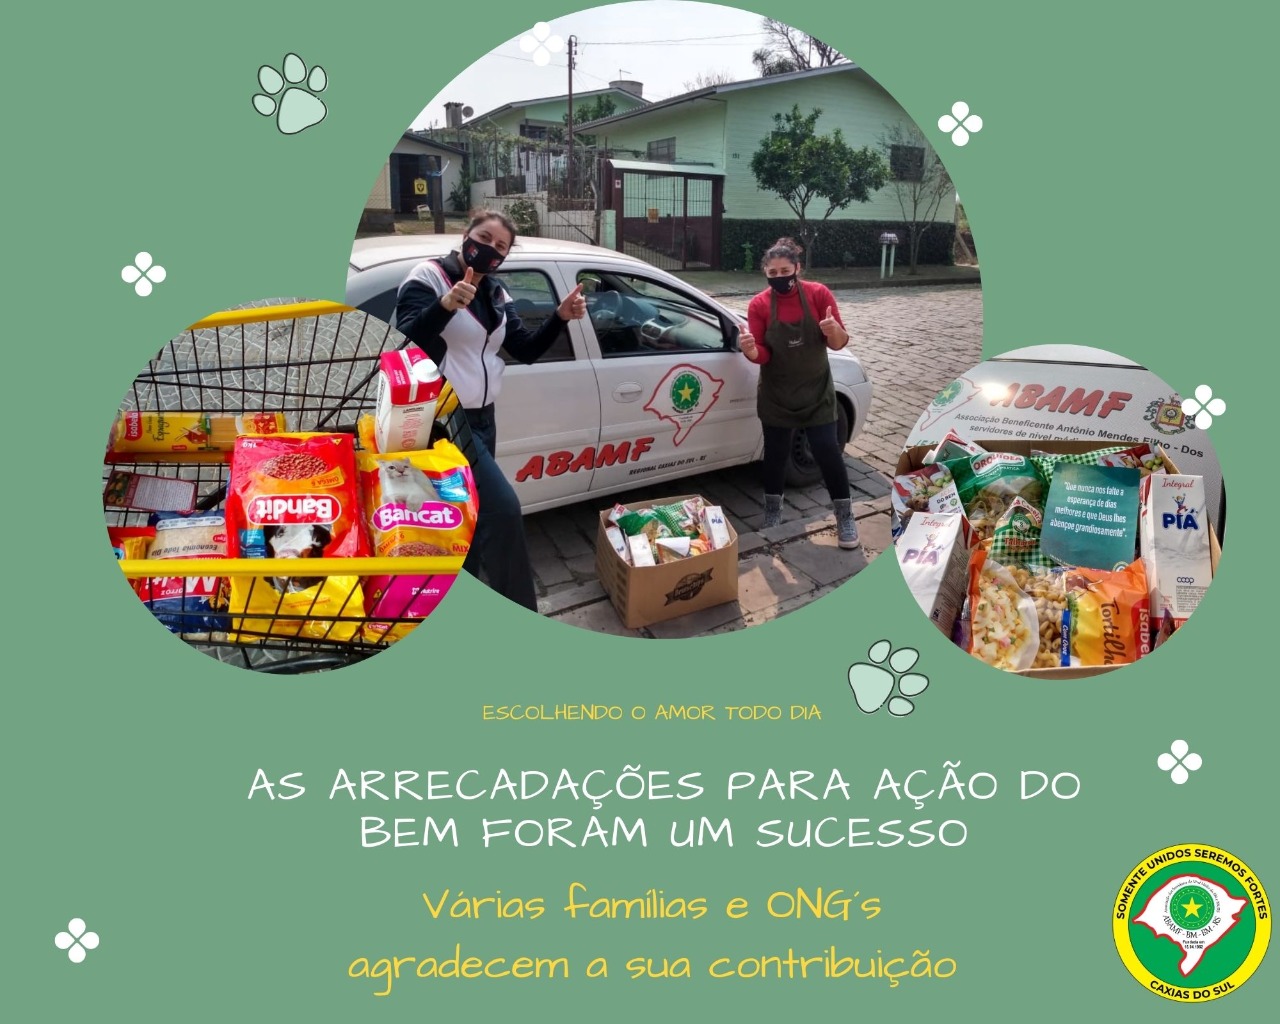 Abamf Caxias agradece a todos que ajudaram na Ação do Bem 